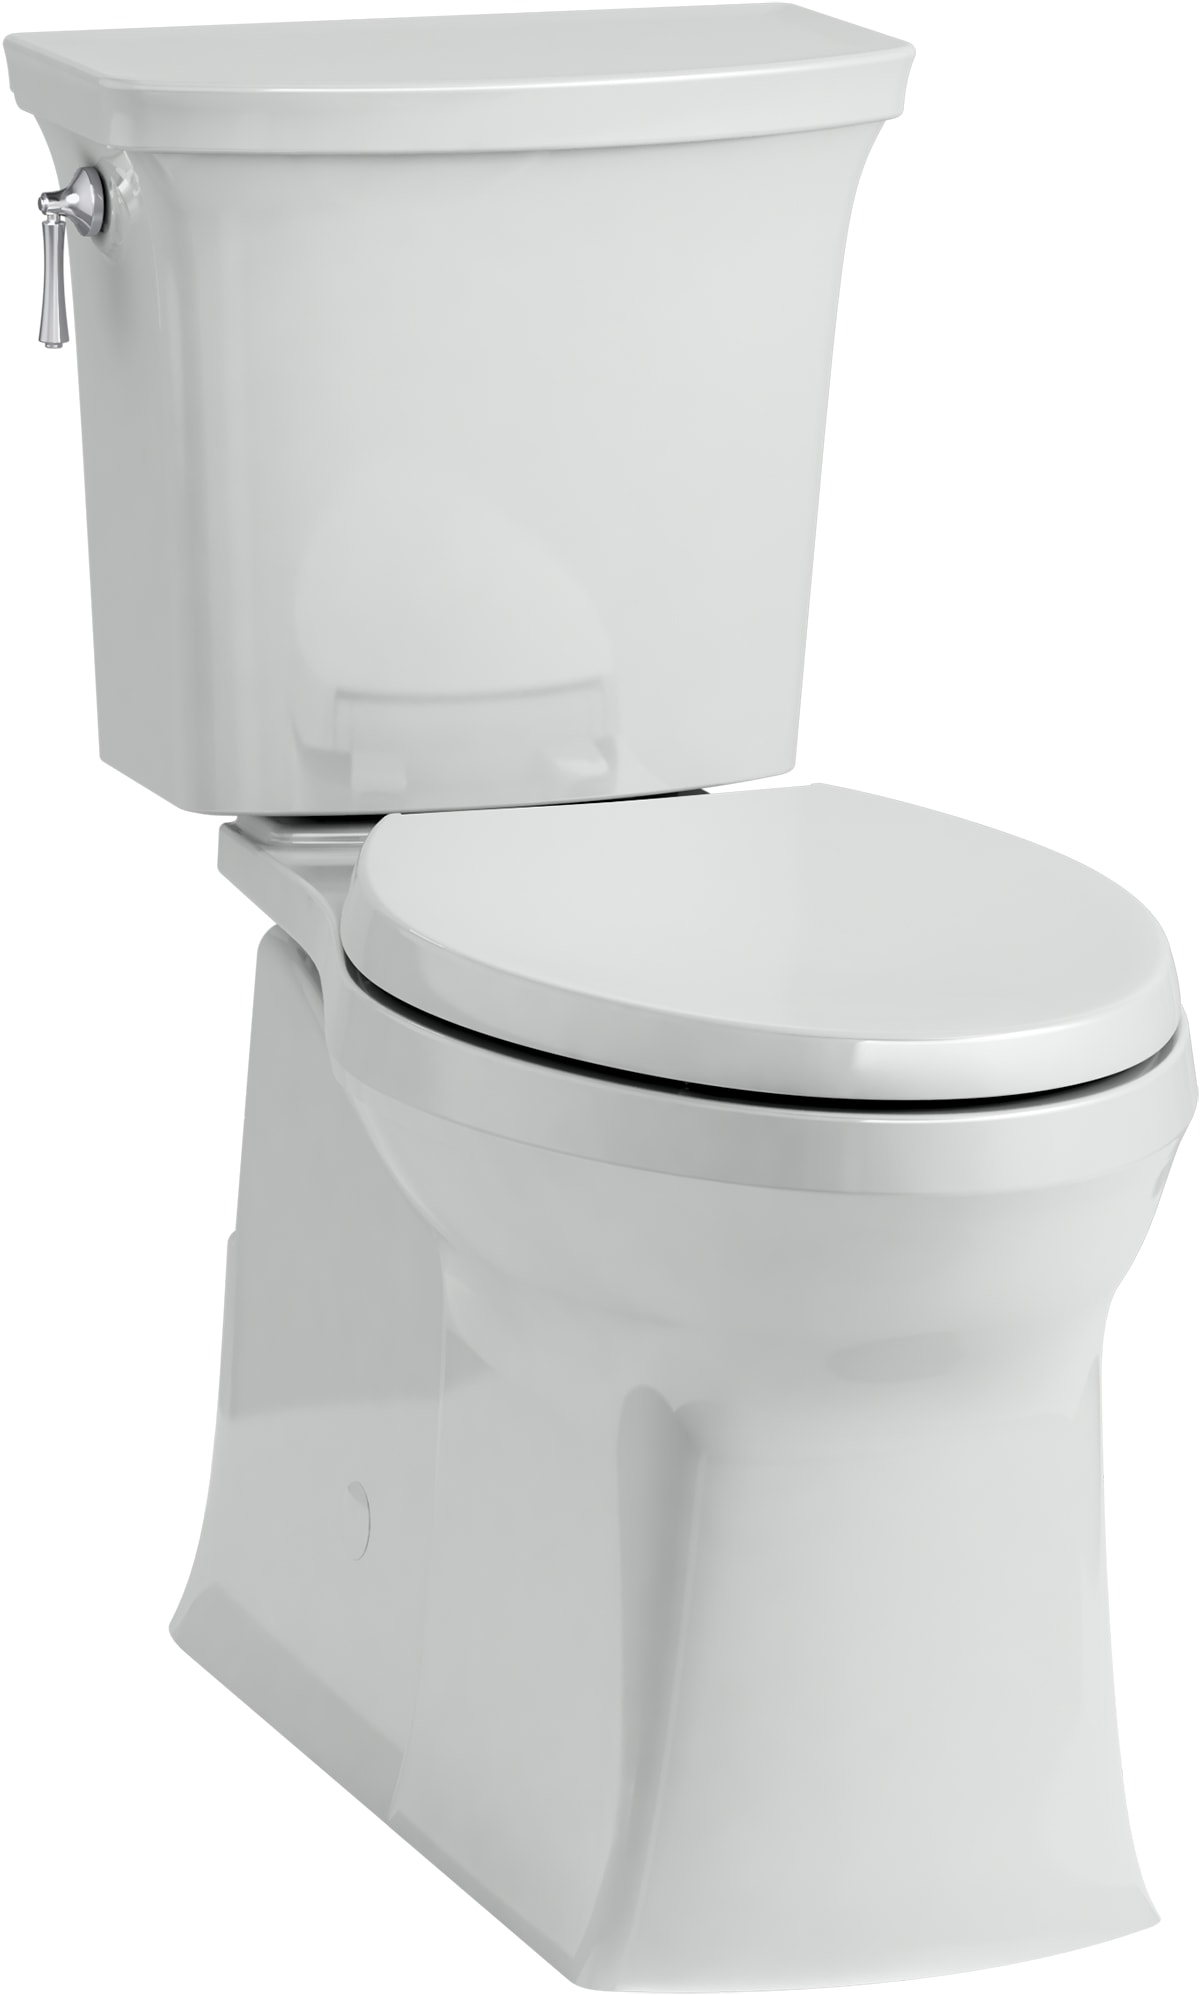 KOHLER Gray Toilets at Lowes.com